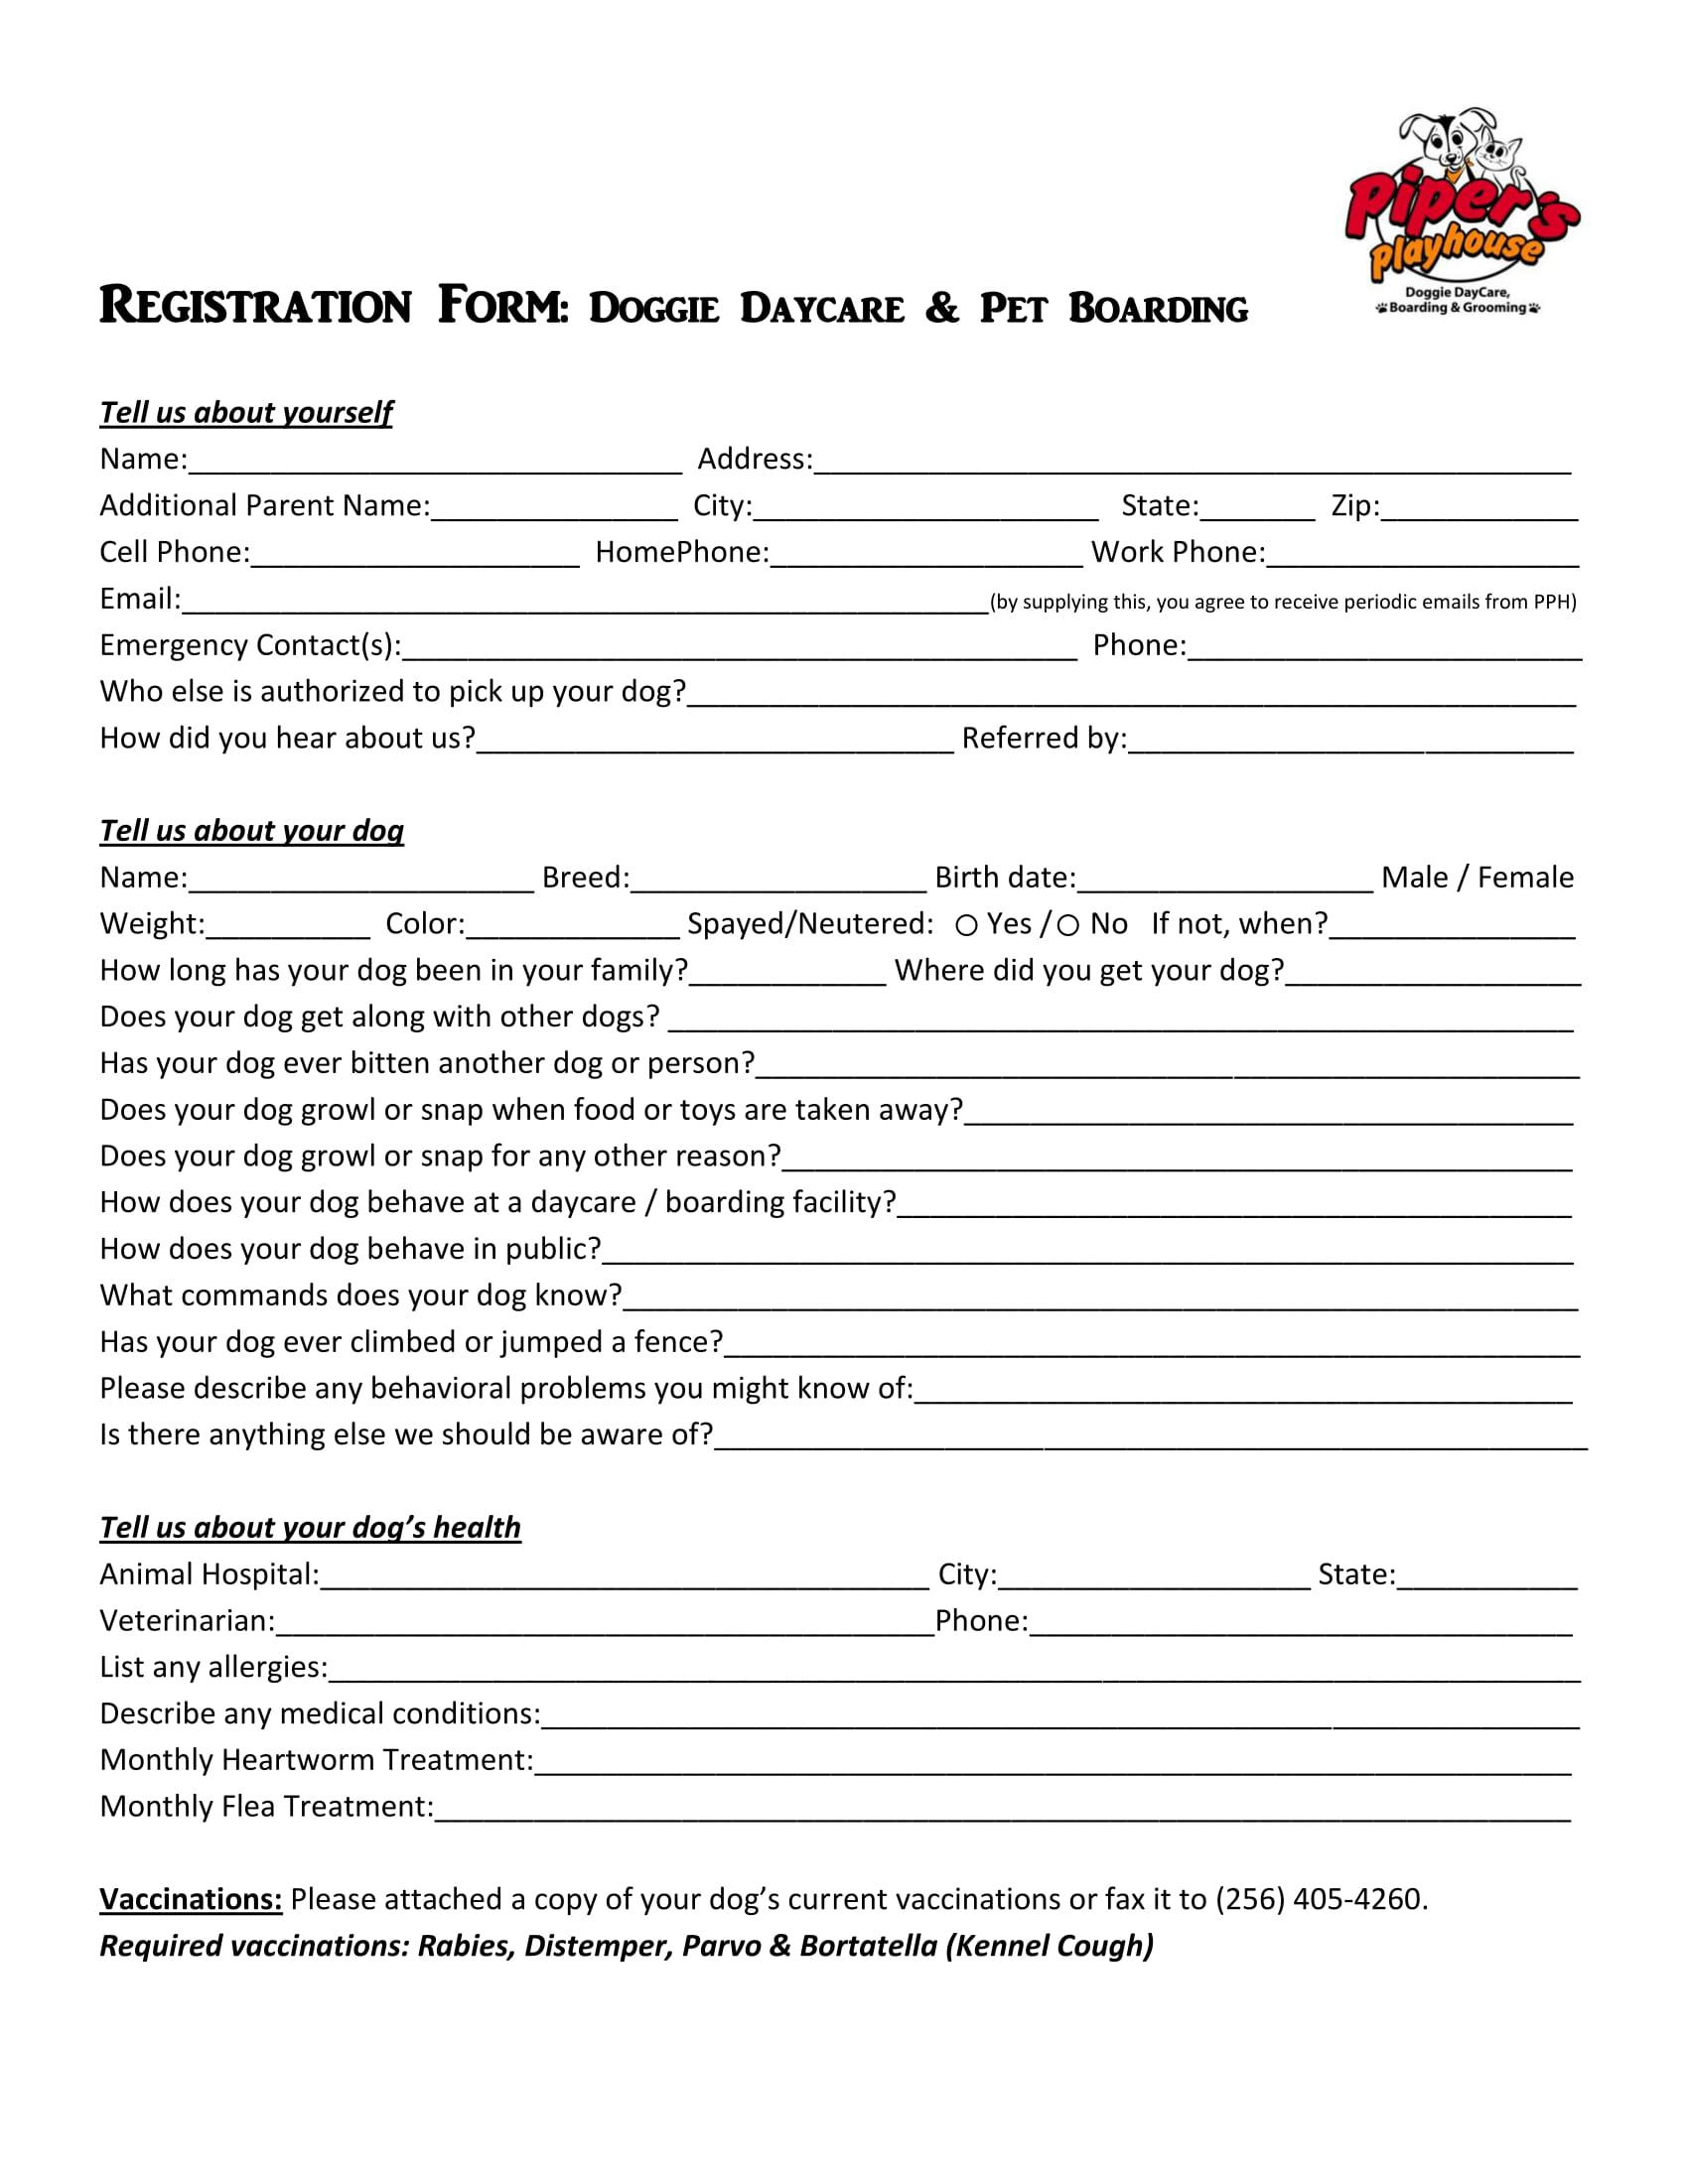 pet boarding daycare registration form 1